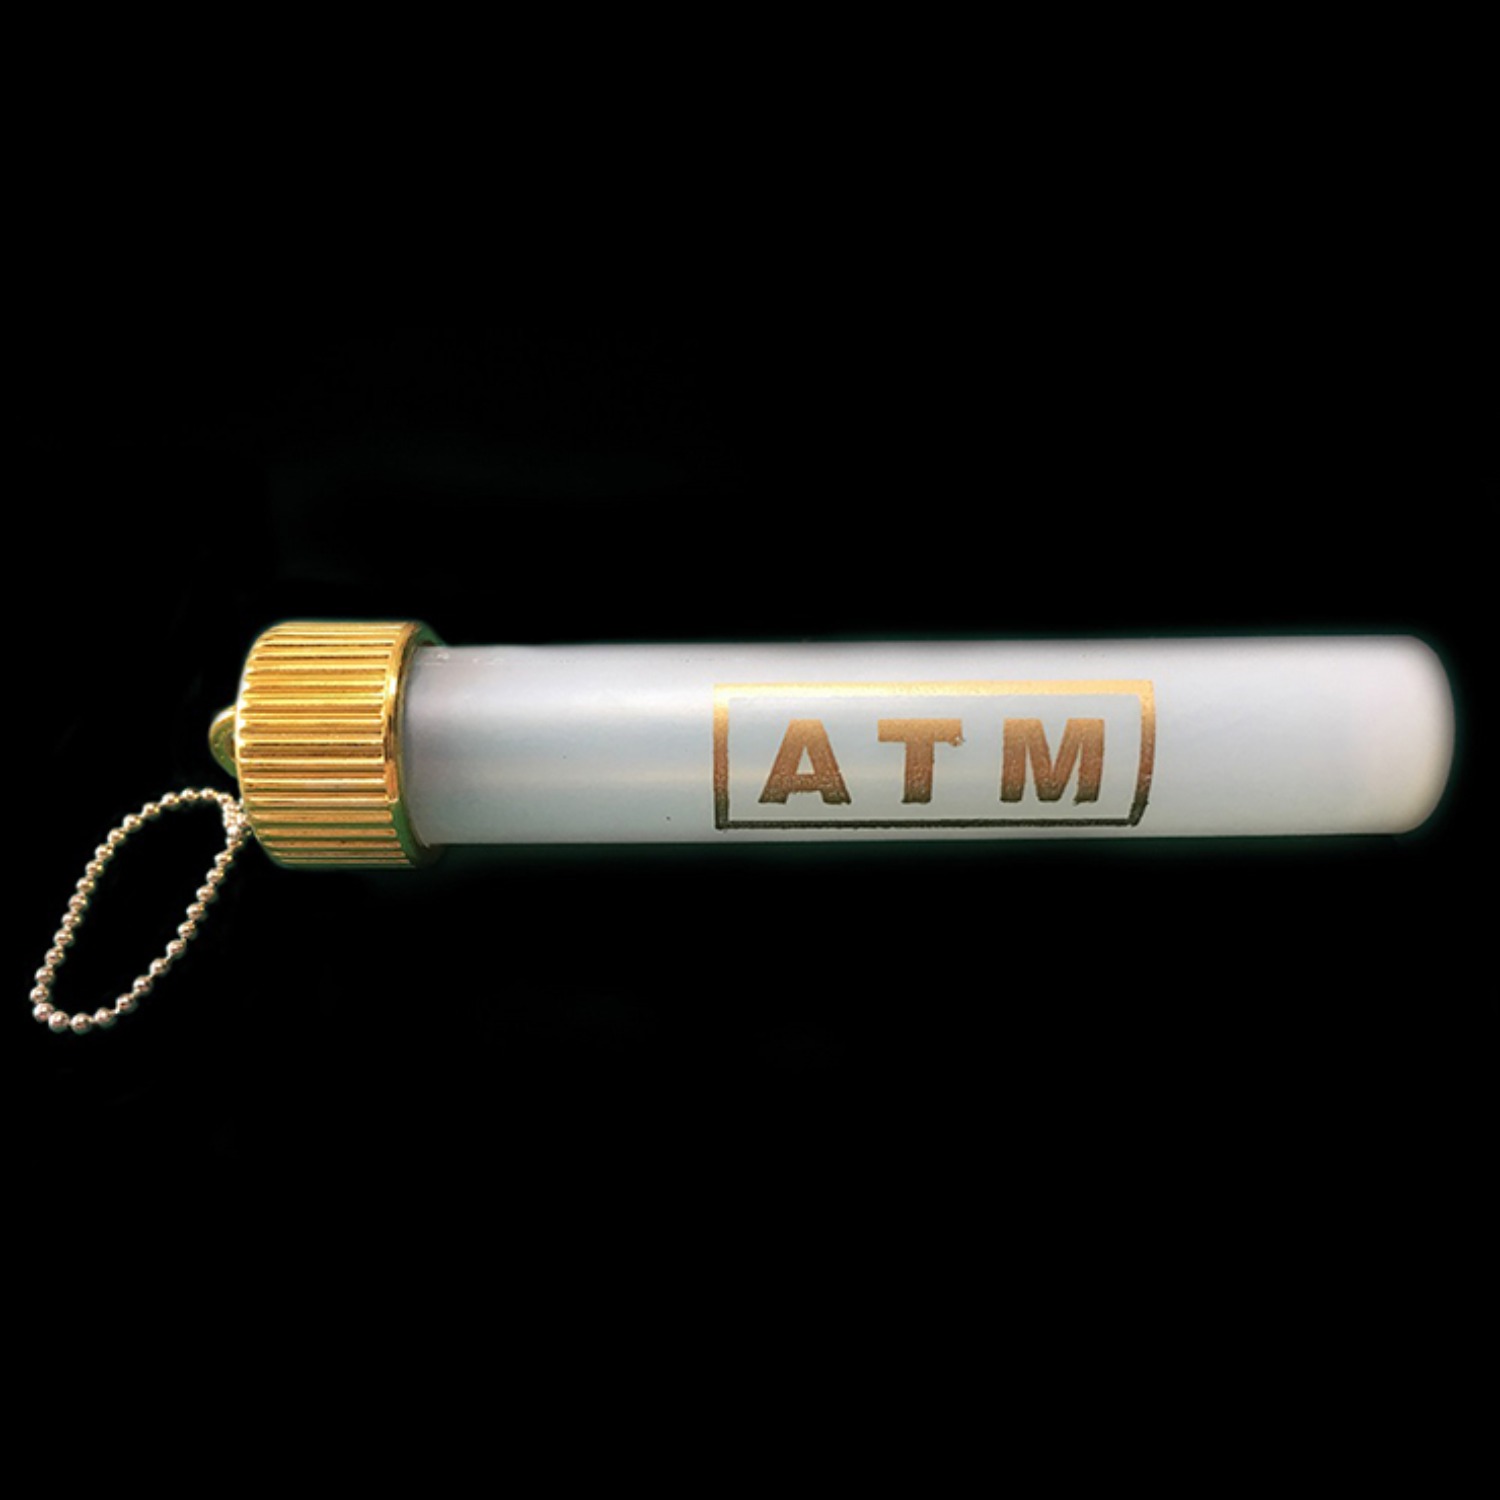 [포터블 에이티엠]Portable ATM by Mr. Maric - 관객의 주머니가 마술사의 ATM기계처럼 사용됩니다.